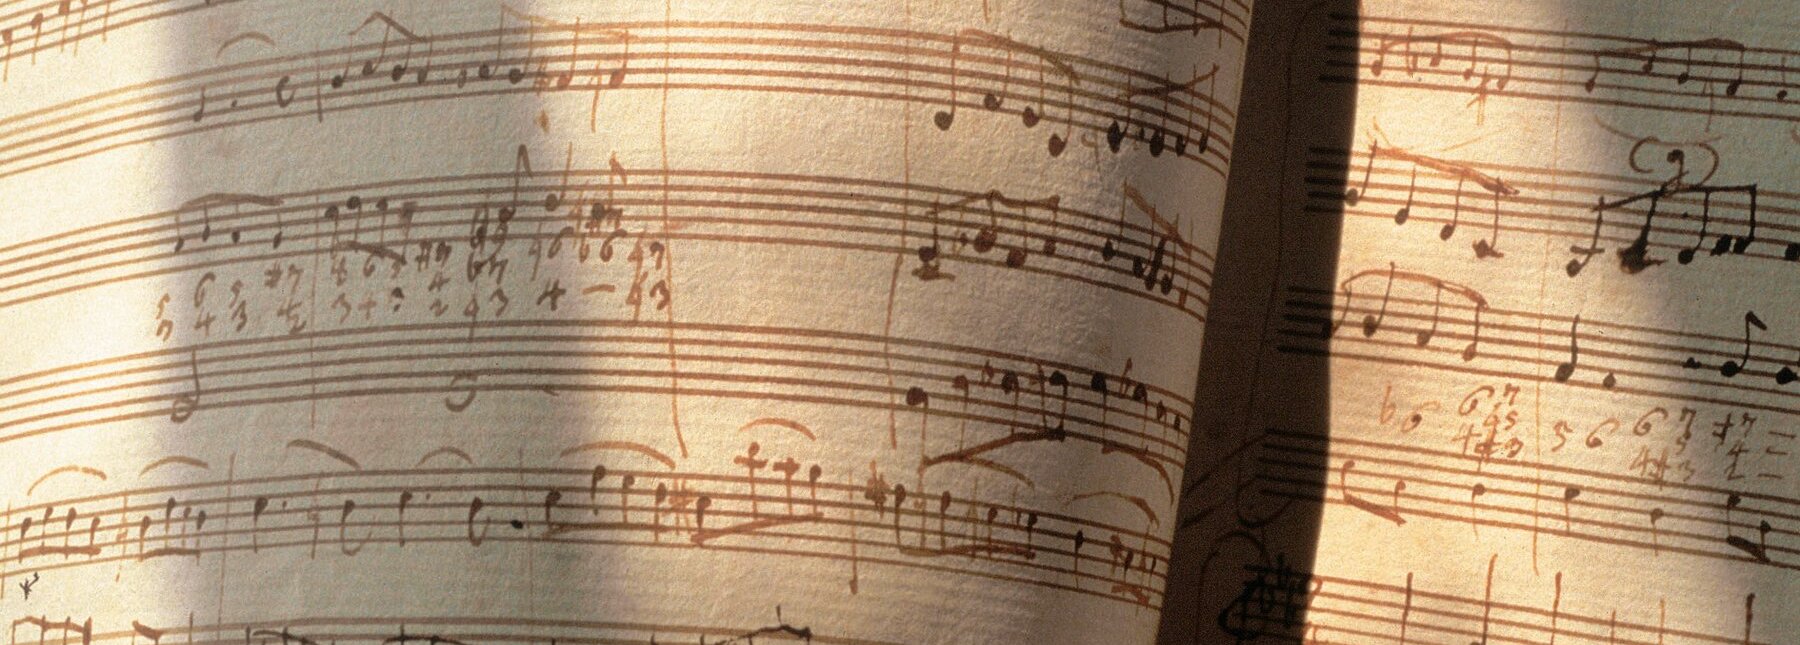 Mozart Notenblatt